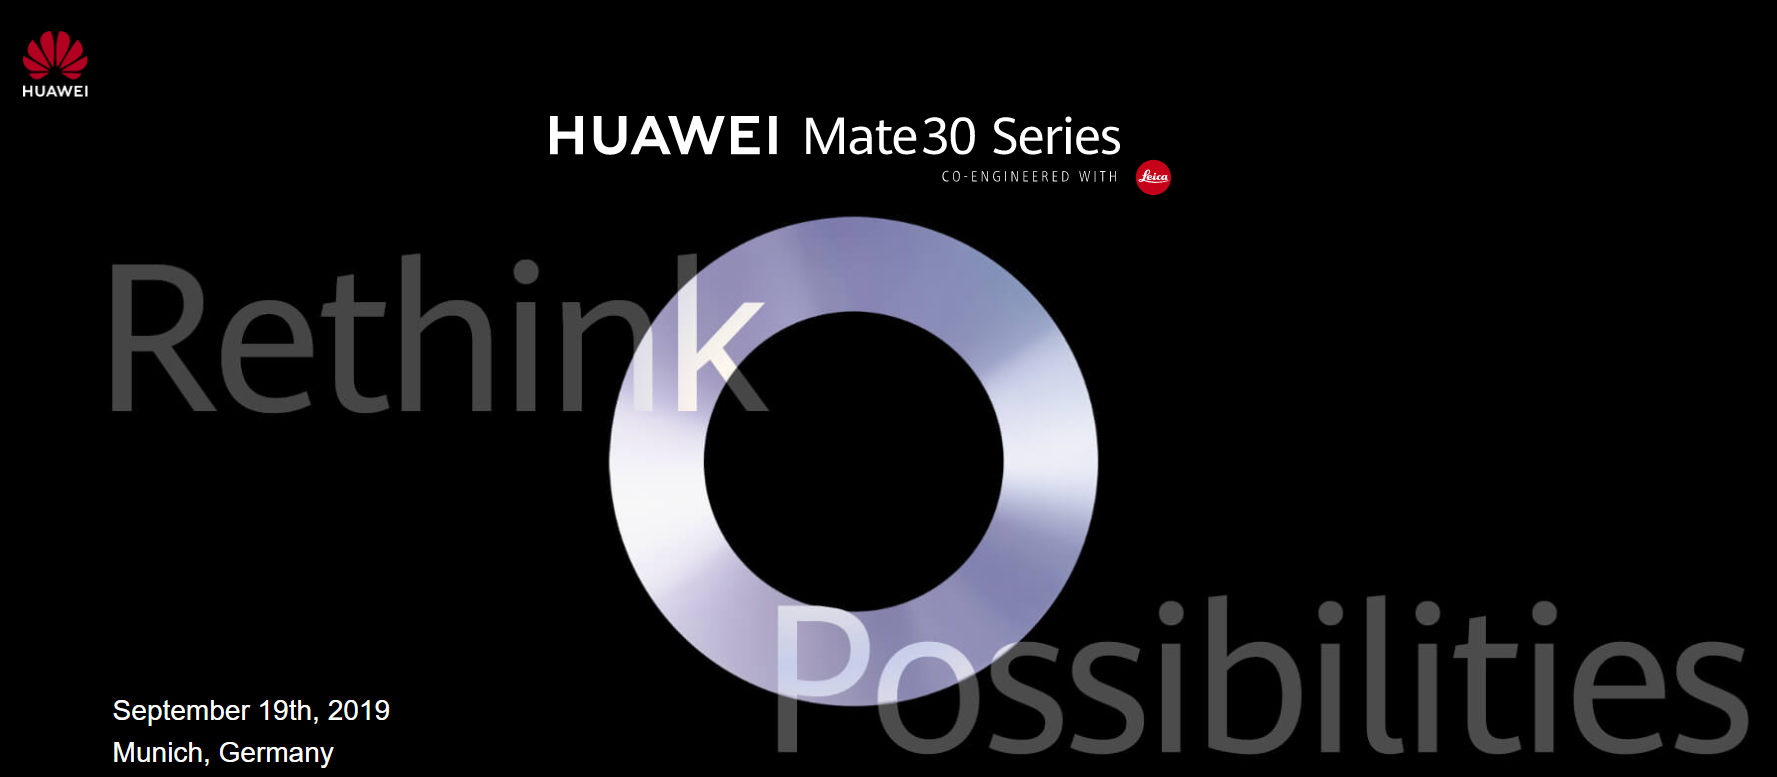 【快訊報報】華為 HUAWEI Mate30 系列新機 將在 9/19 德國慕尼黑發表 - youtube - 科技狗 3C DOG